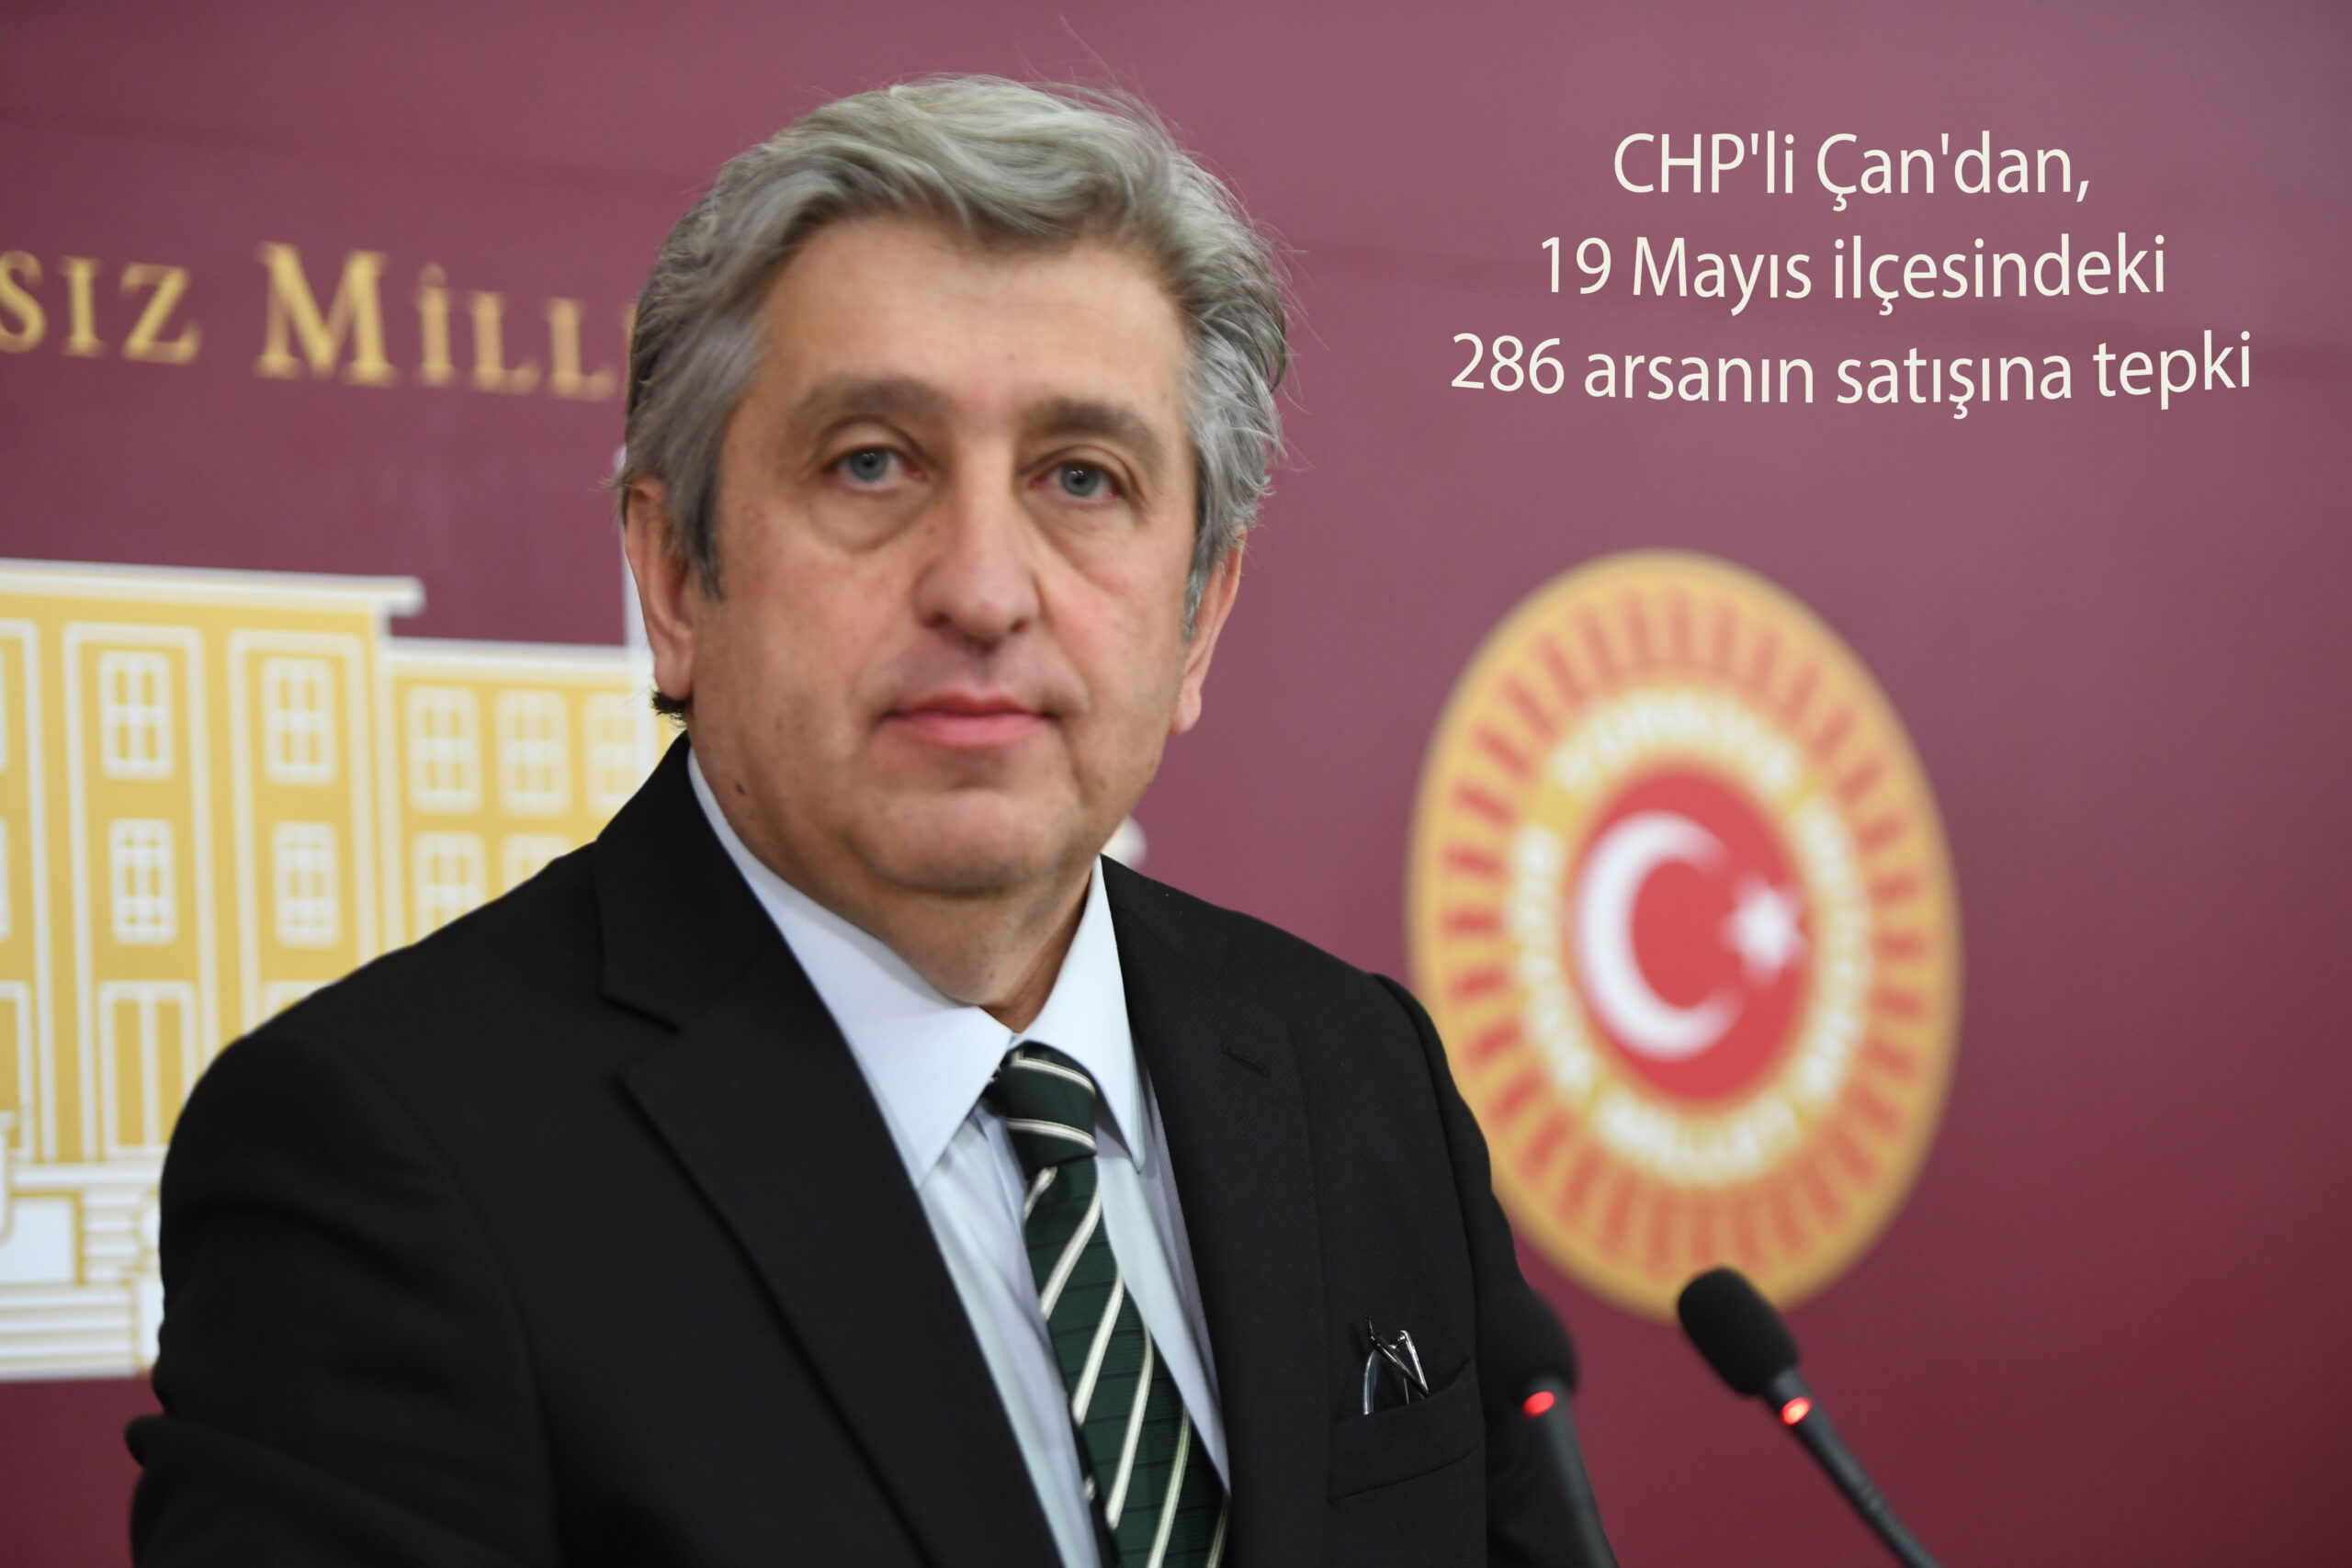 CHP’li Çan’dan, 19 Mayıs ilçesindeki 286 arsanın satışına tepki